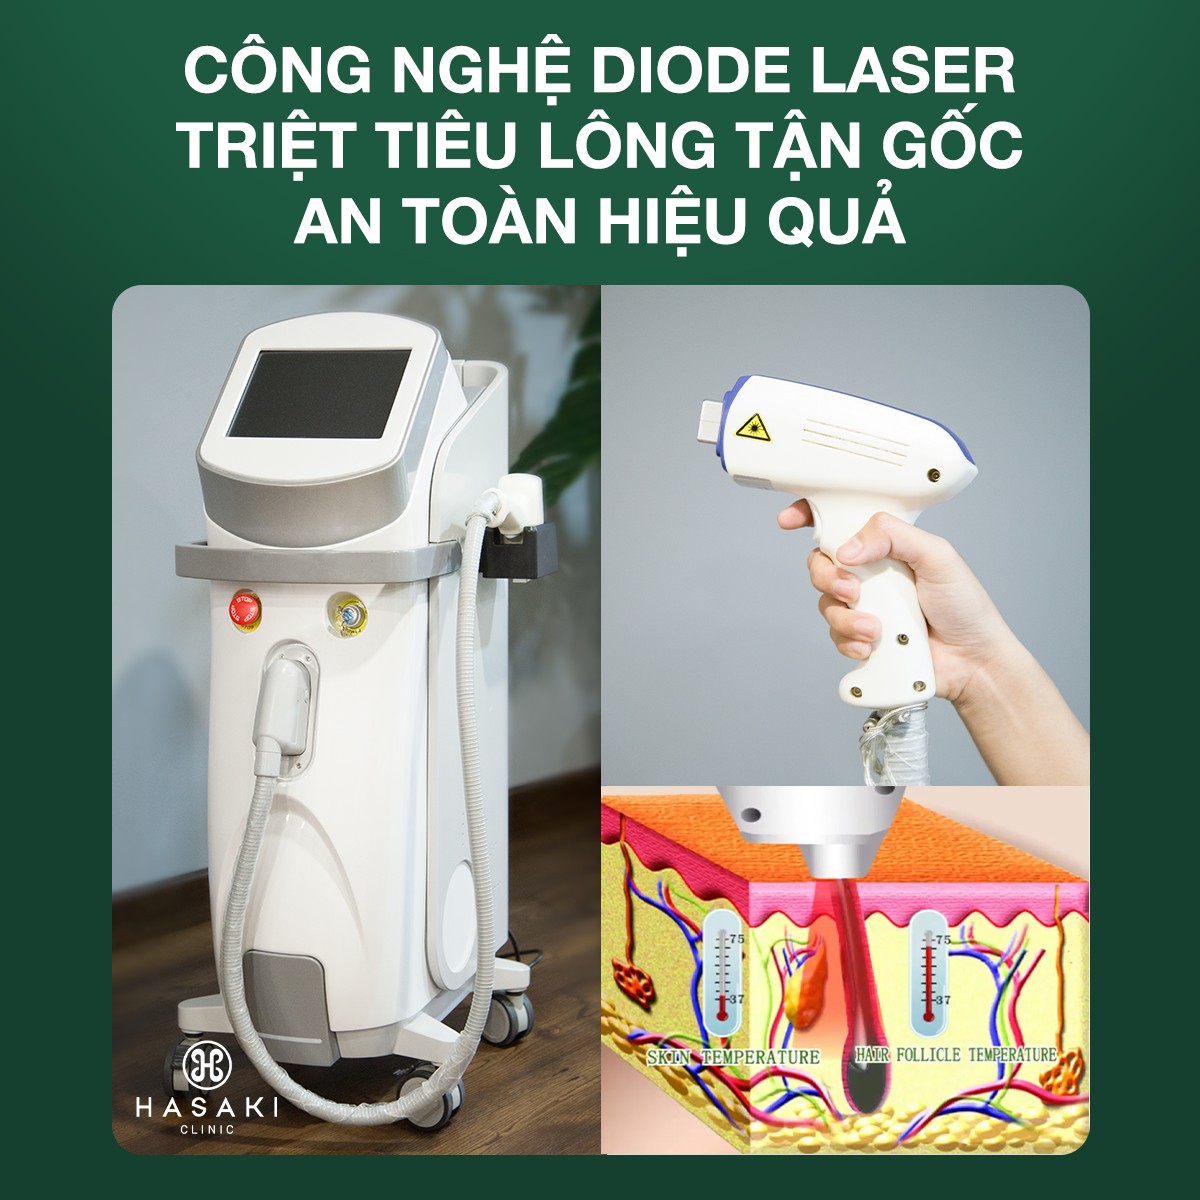 Triệt Lông Diode Laser máy công nghệ cao không đau, hiệu quả cao